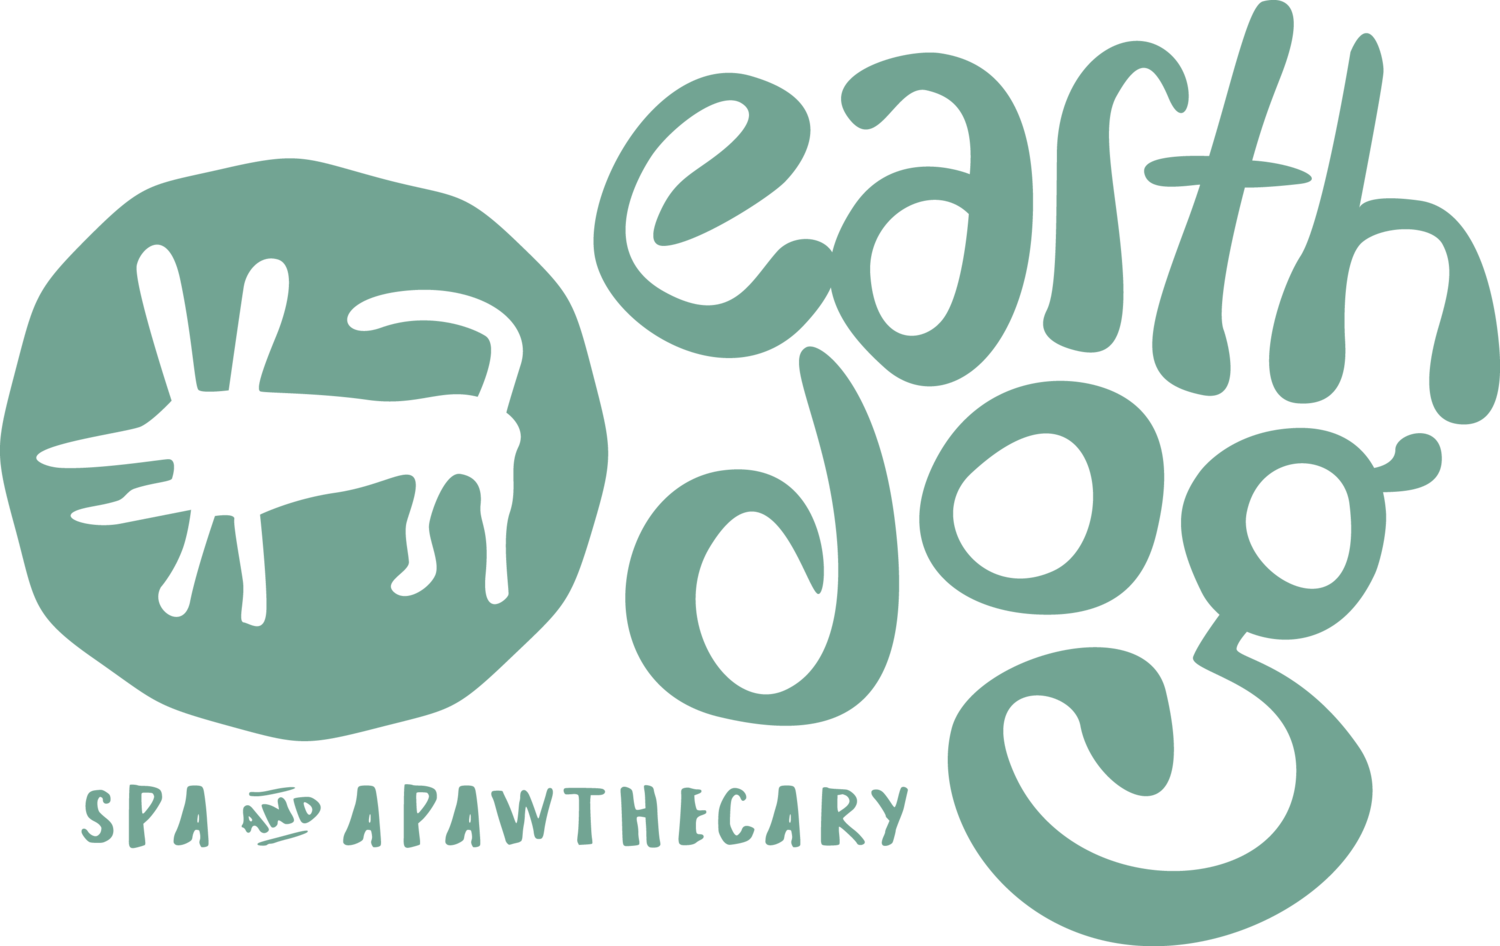 Company logo of Earth Dog Spa & Apawthecary